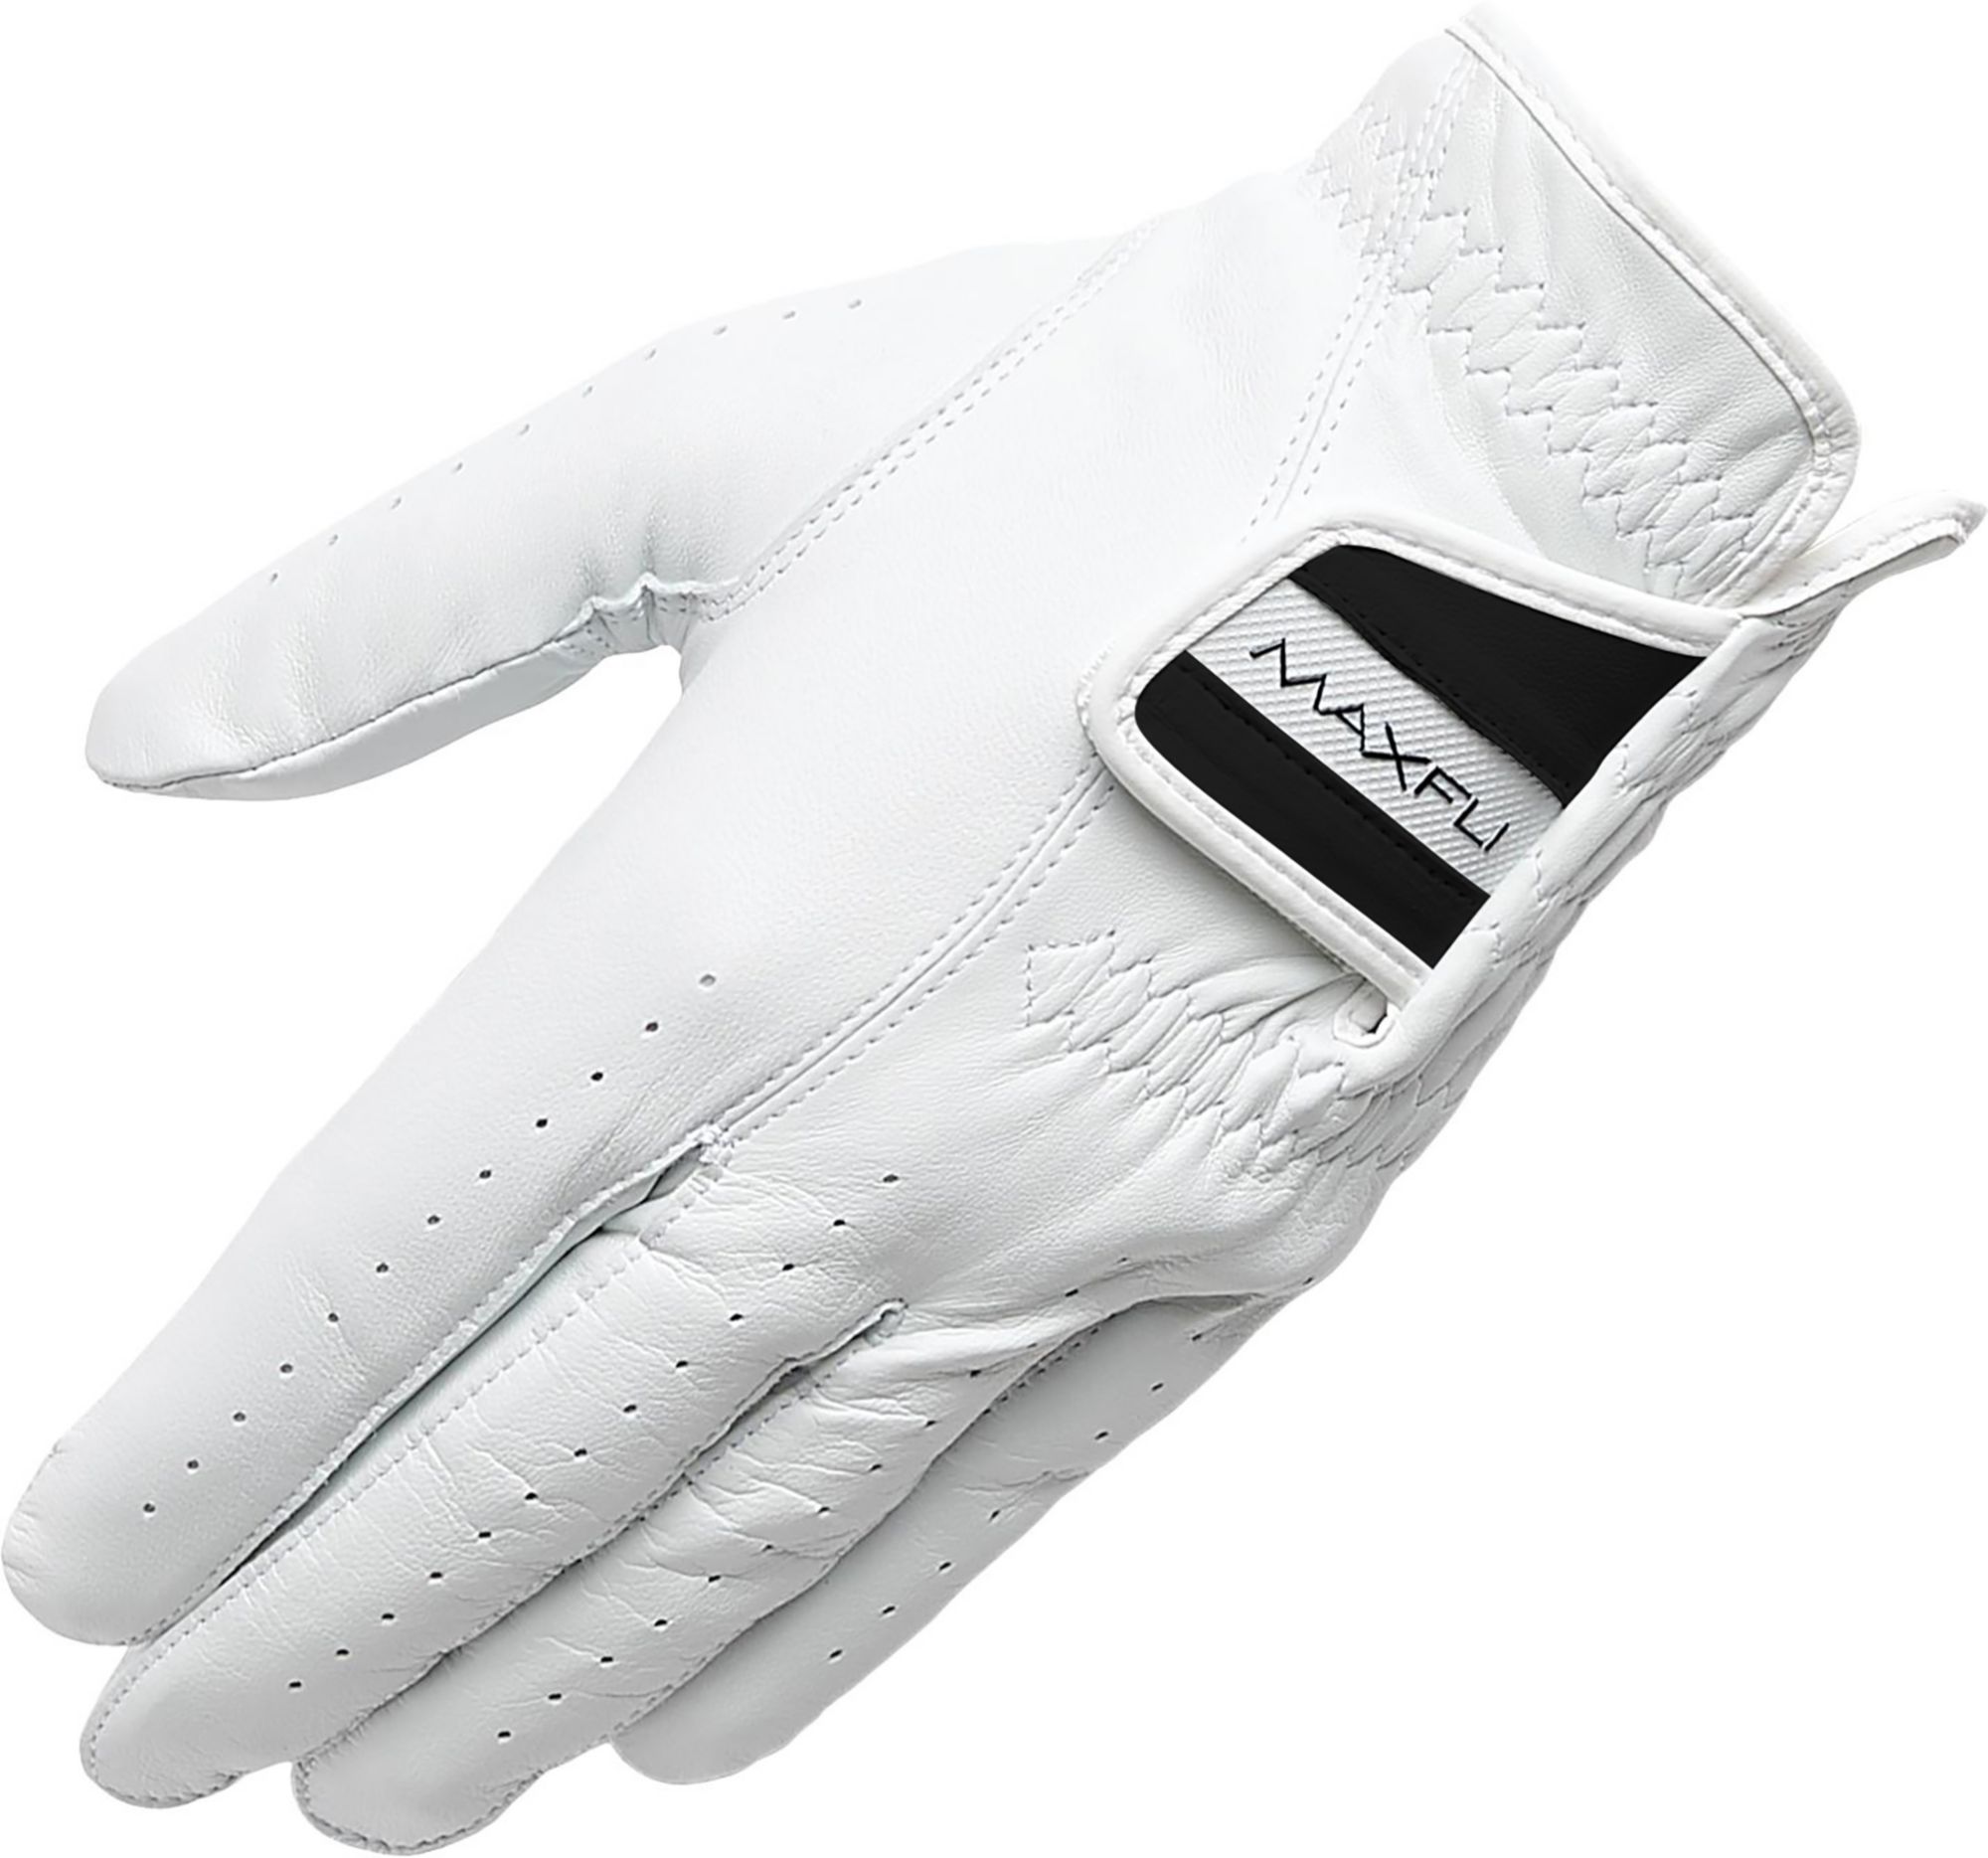 Maxfli Elite Golf Glove